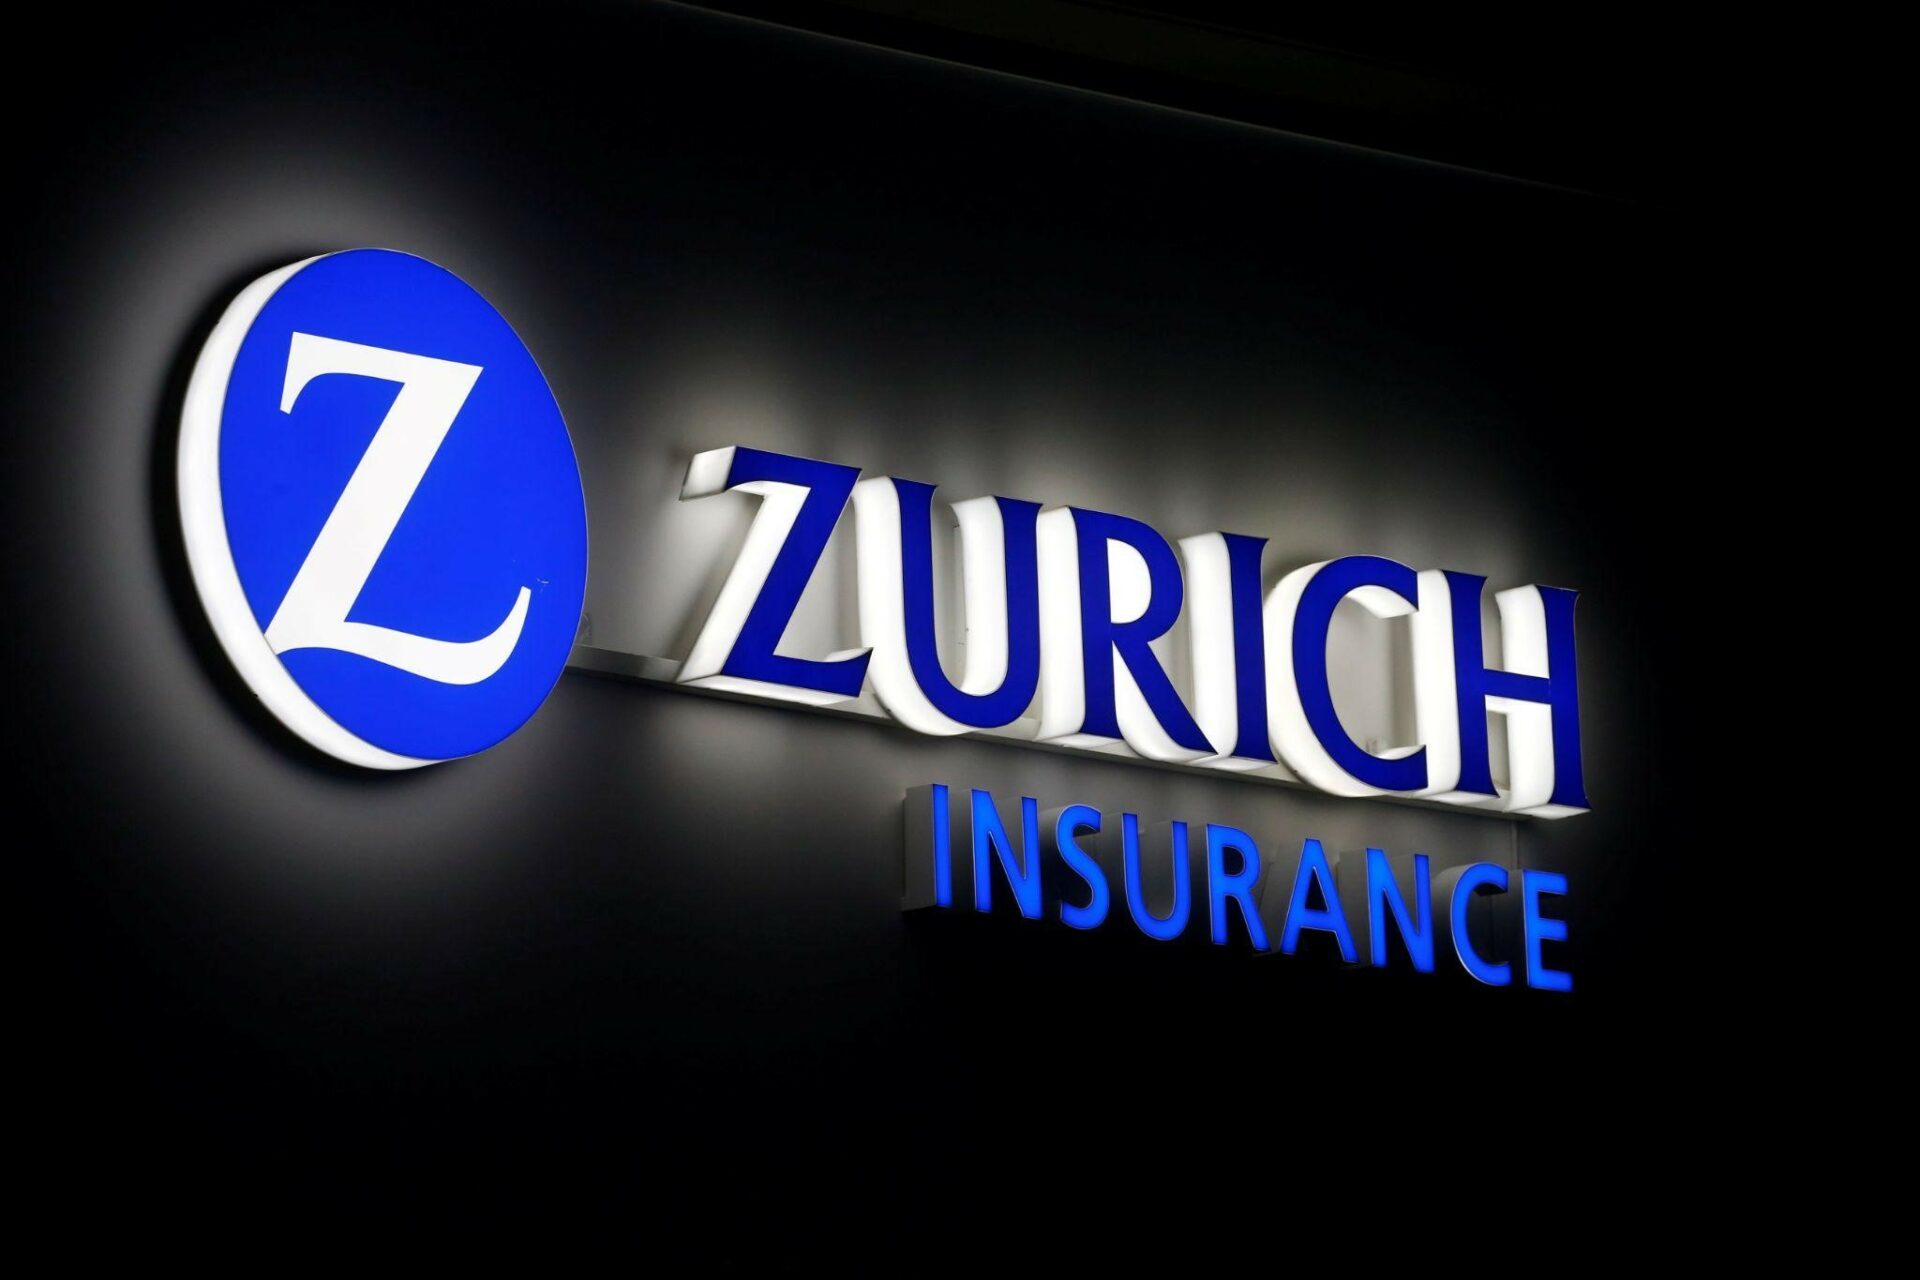 Zurich Insurance Group Tiếp Tục Mở Rộng Kinh Doanh Trong Giai Đoạn 2023-2025